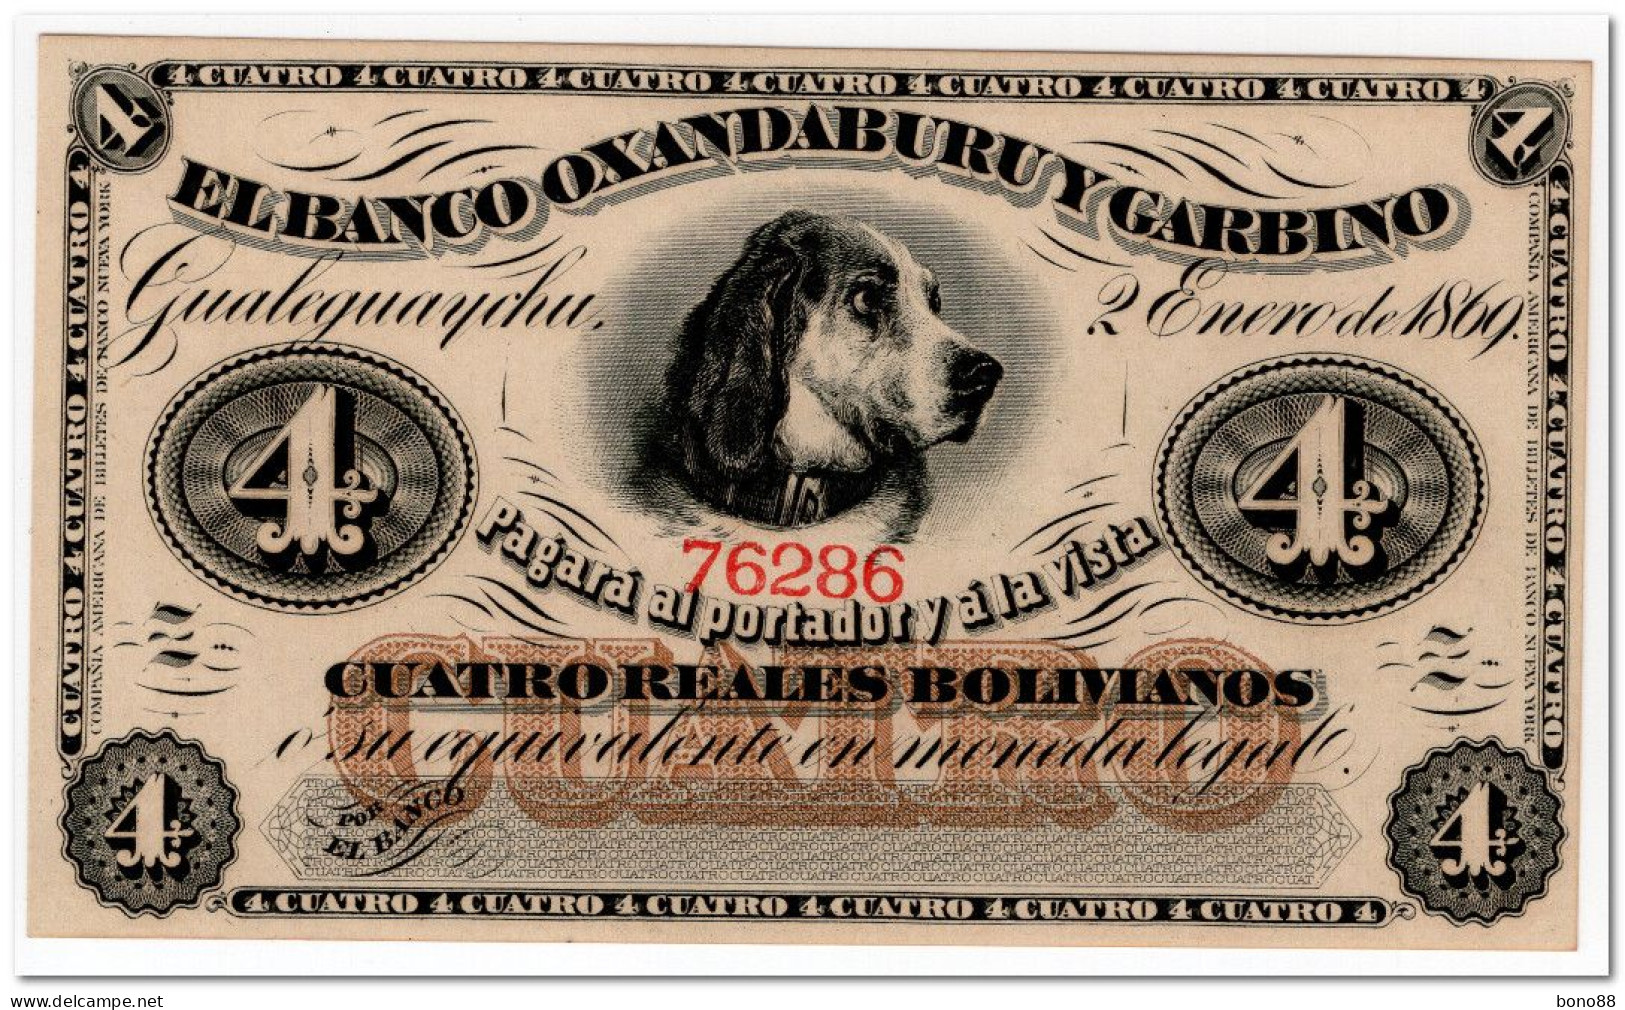 ARGENTINA,BANCO OXANDABURU Y GARBINO, 4 REALES BOLIVIANOS,1869,P.S1781,UNC - Argentine